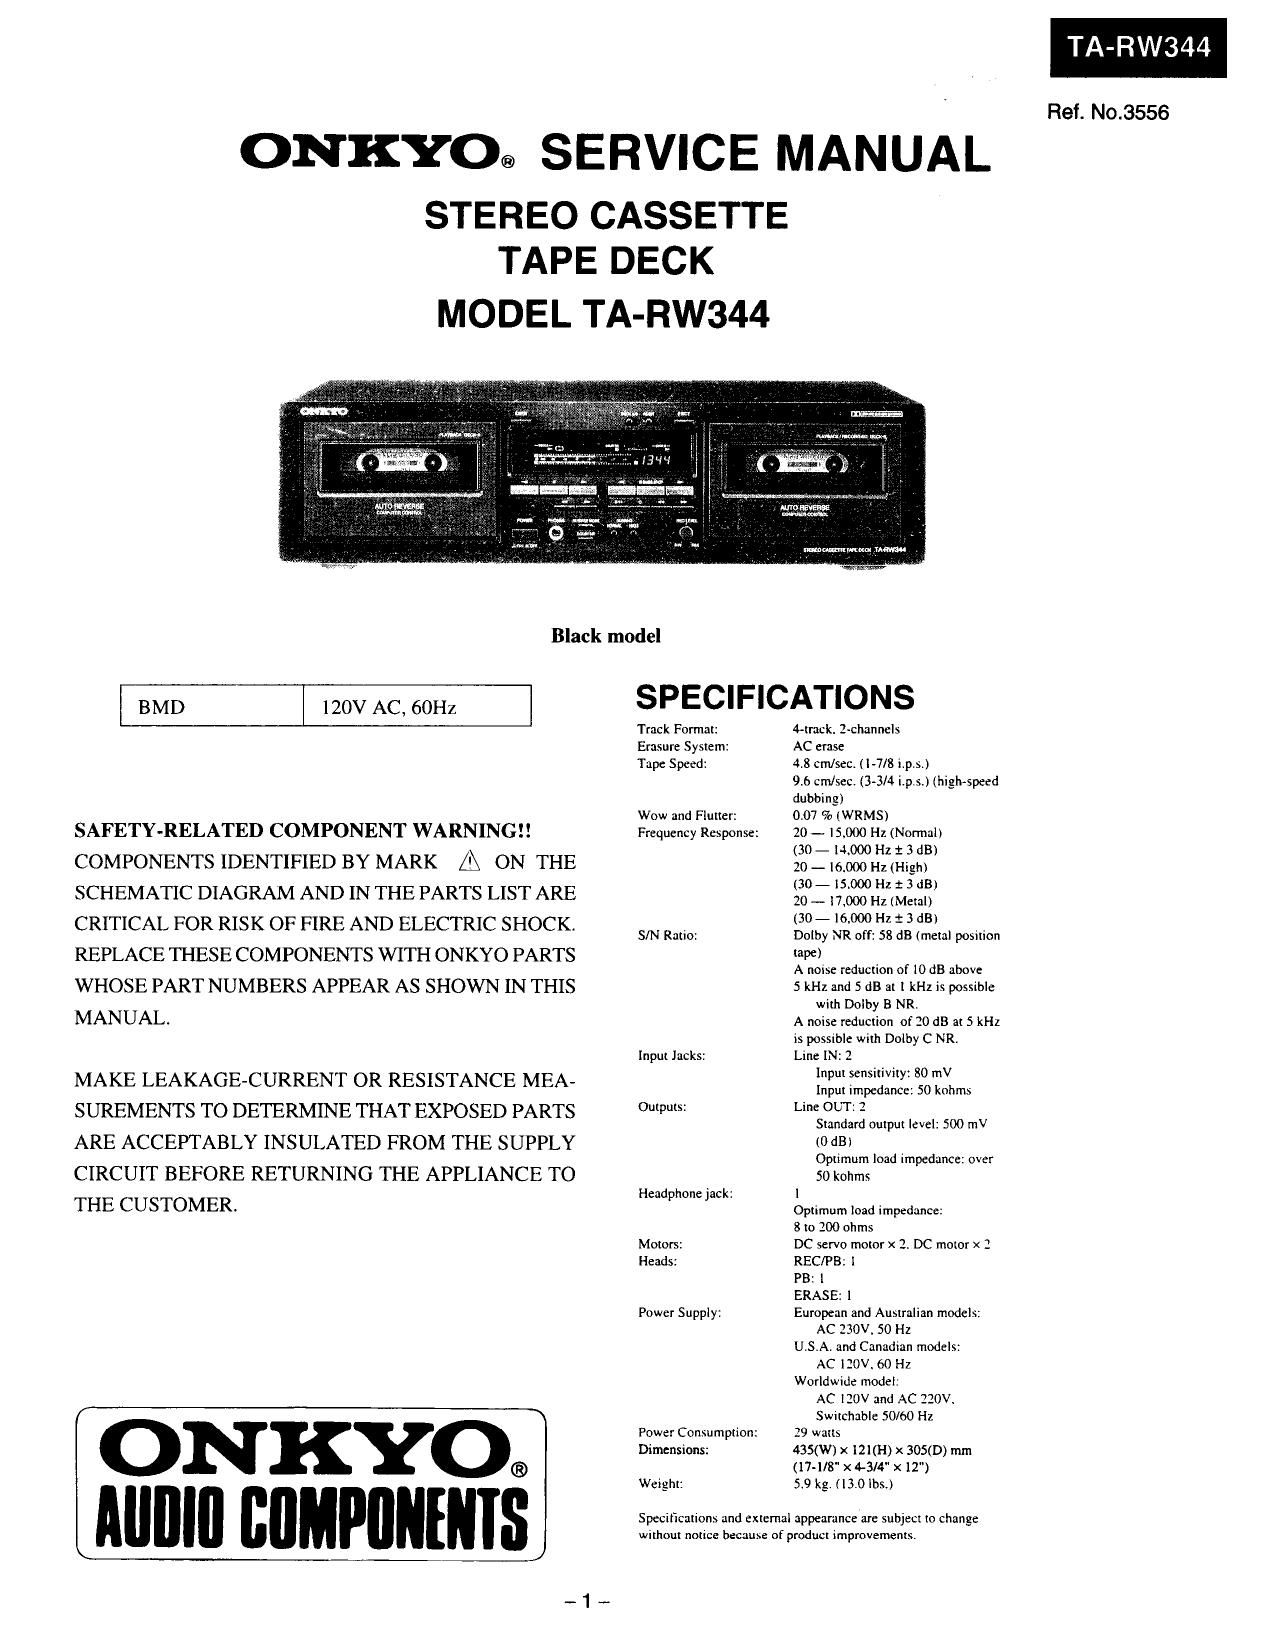 Onkyo TARW 344 Service Manual